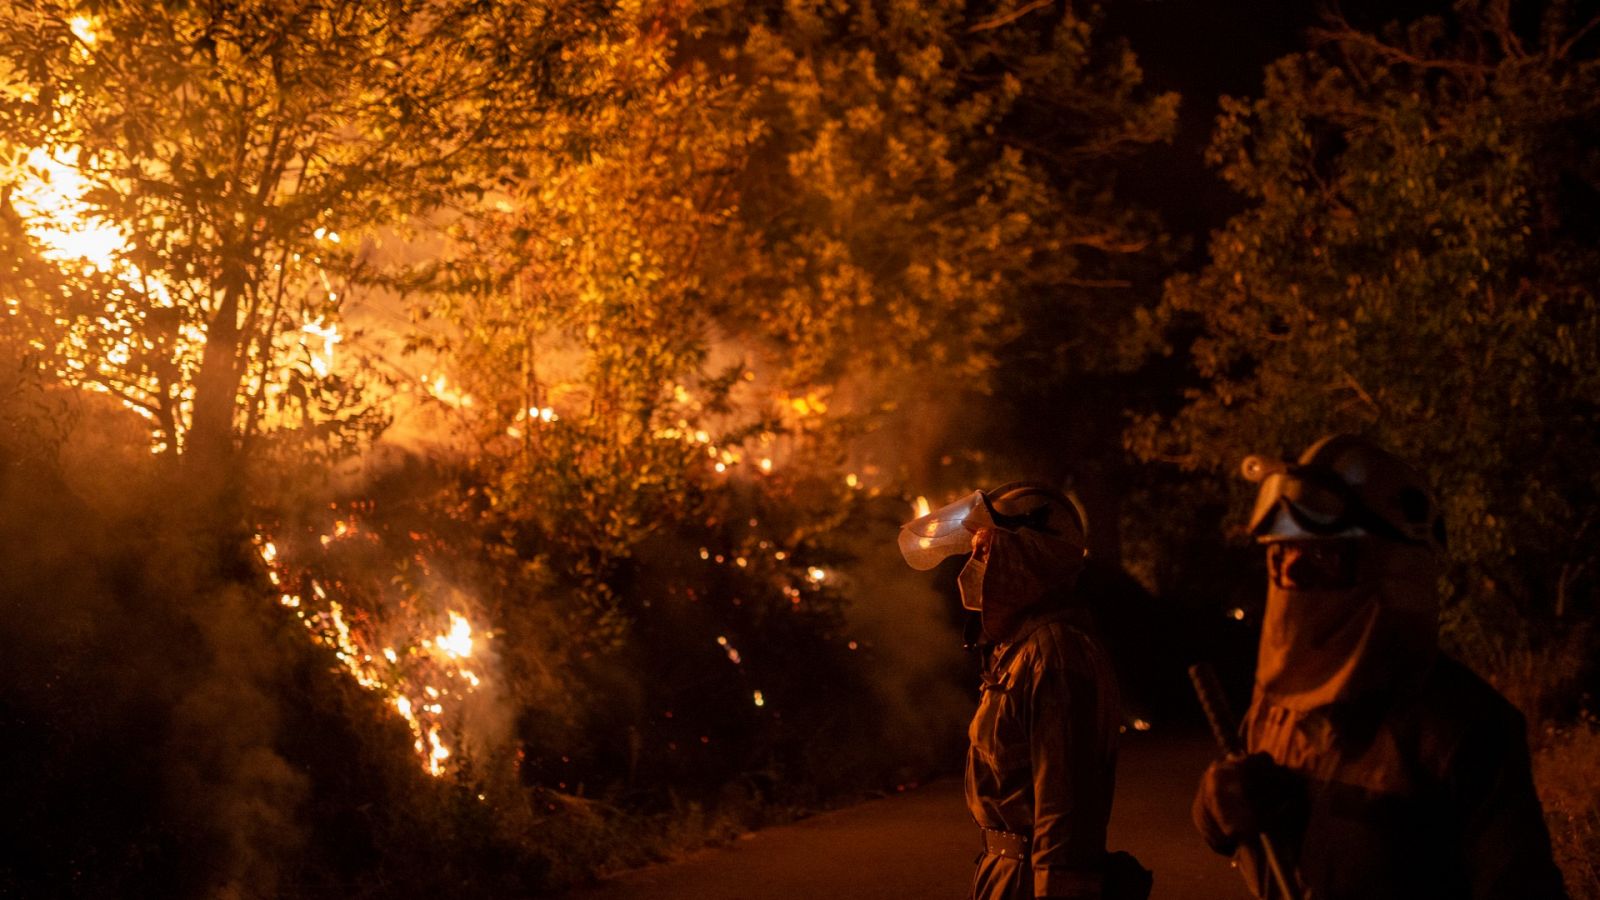 El cambio climático y el abandono rural, detrás de incendios "cada vez más grandes y destructivos"